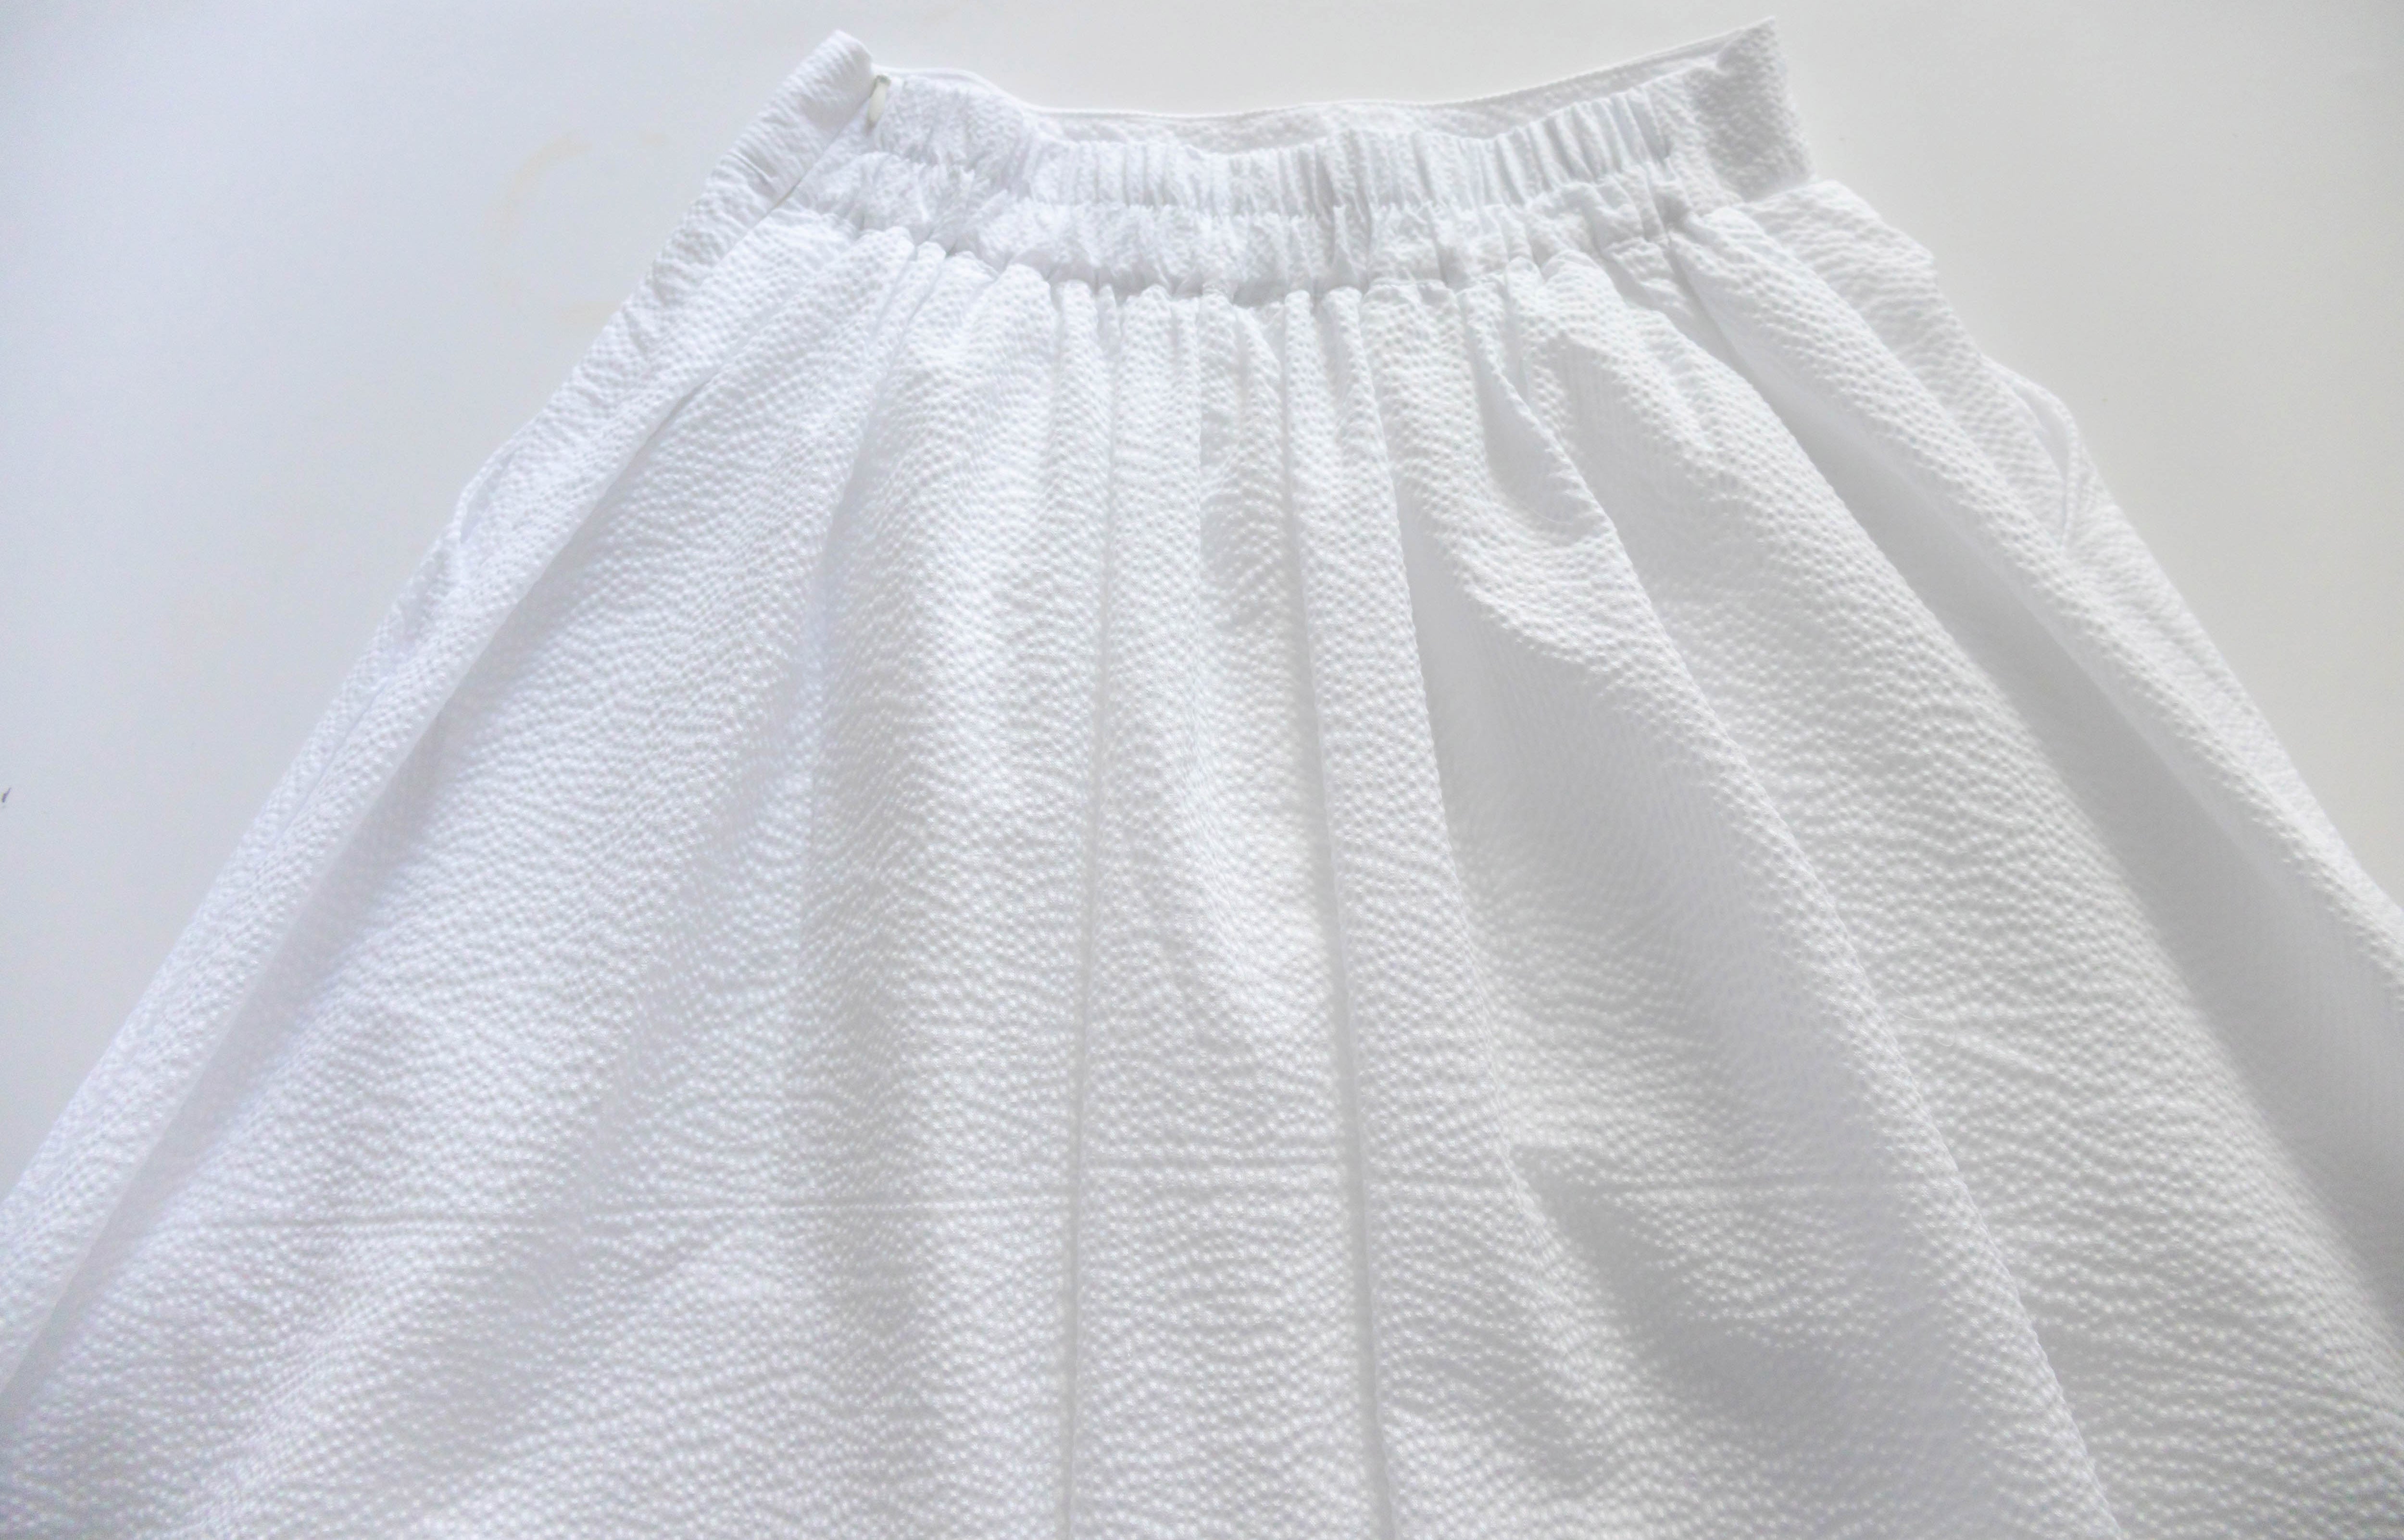 Pocket Stripe 口袋暗直紋後橡筋輕盈半身裙, Skirt/ SK8720